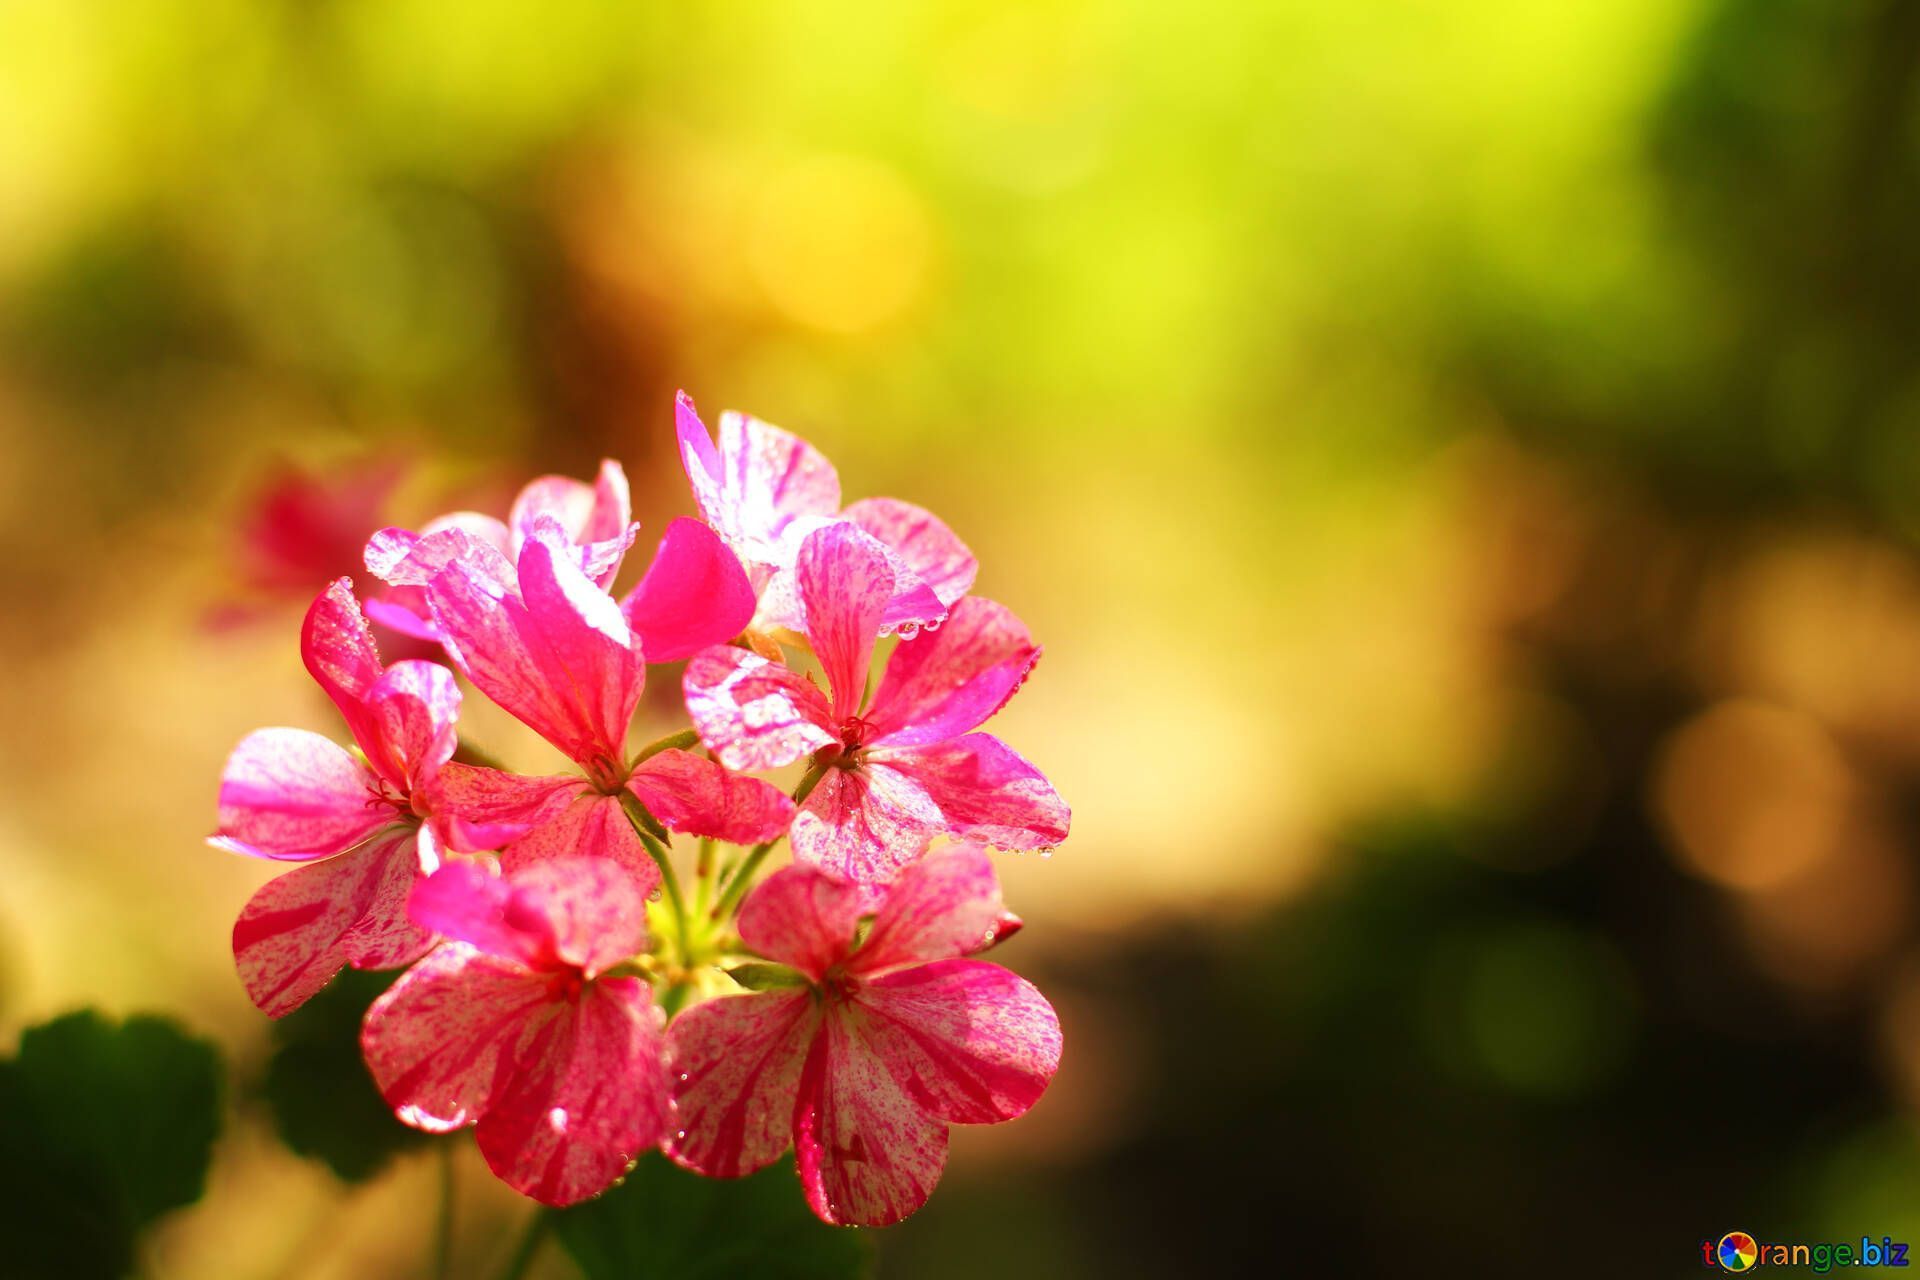 Schönste Hintergrundbild 1920x1280. Blumen geranie bild schöne blume hintergrundbilder für den bildschirm bilder bildschirmhintergrund № 32400